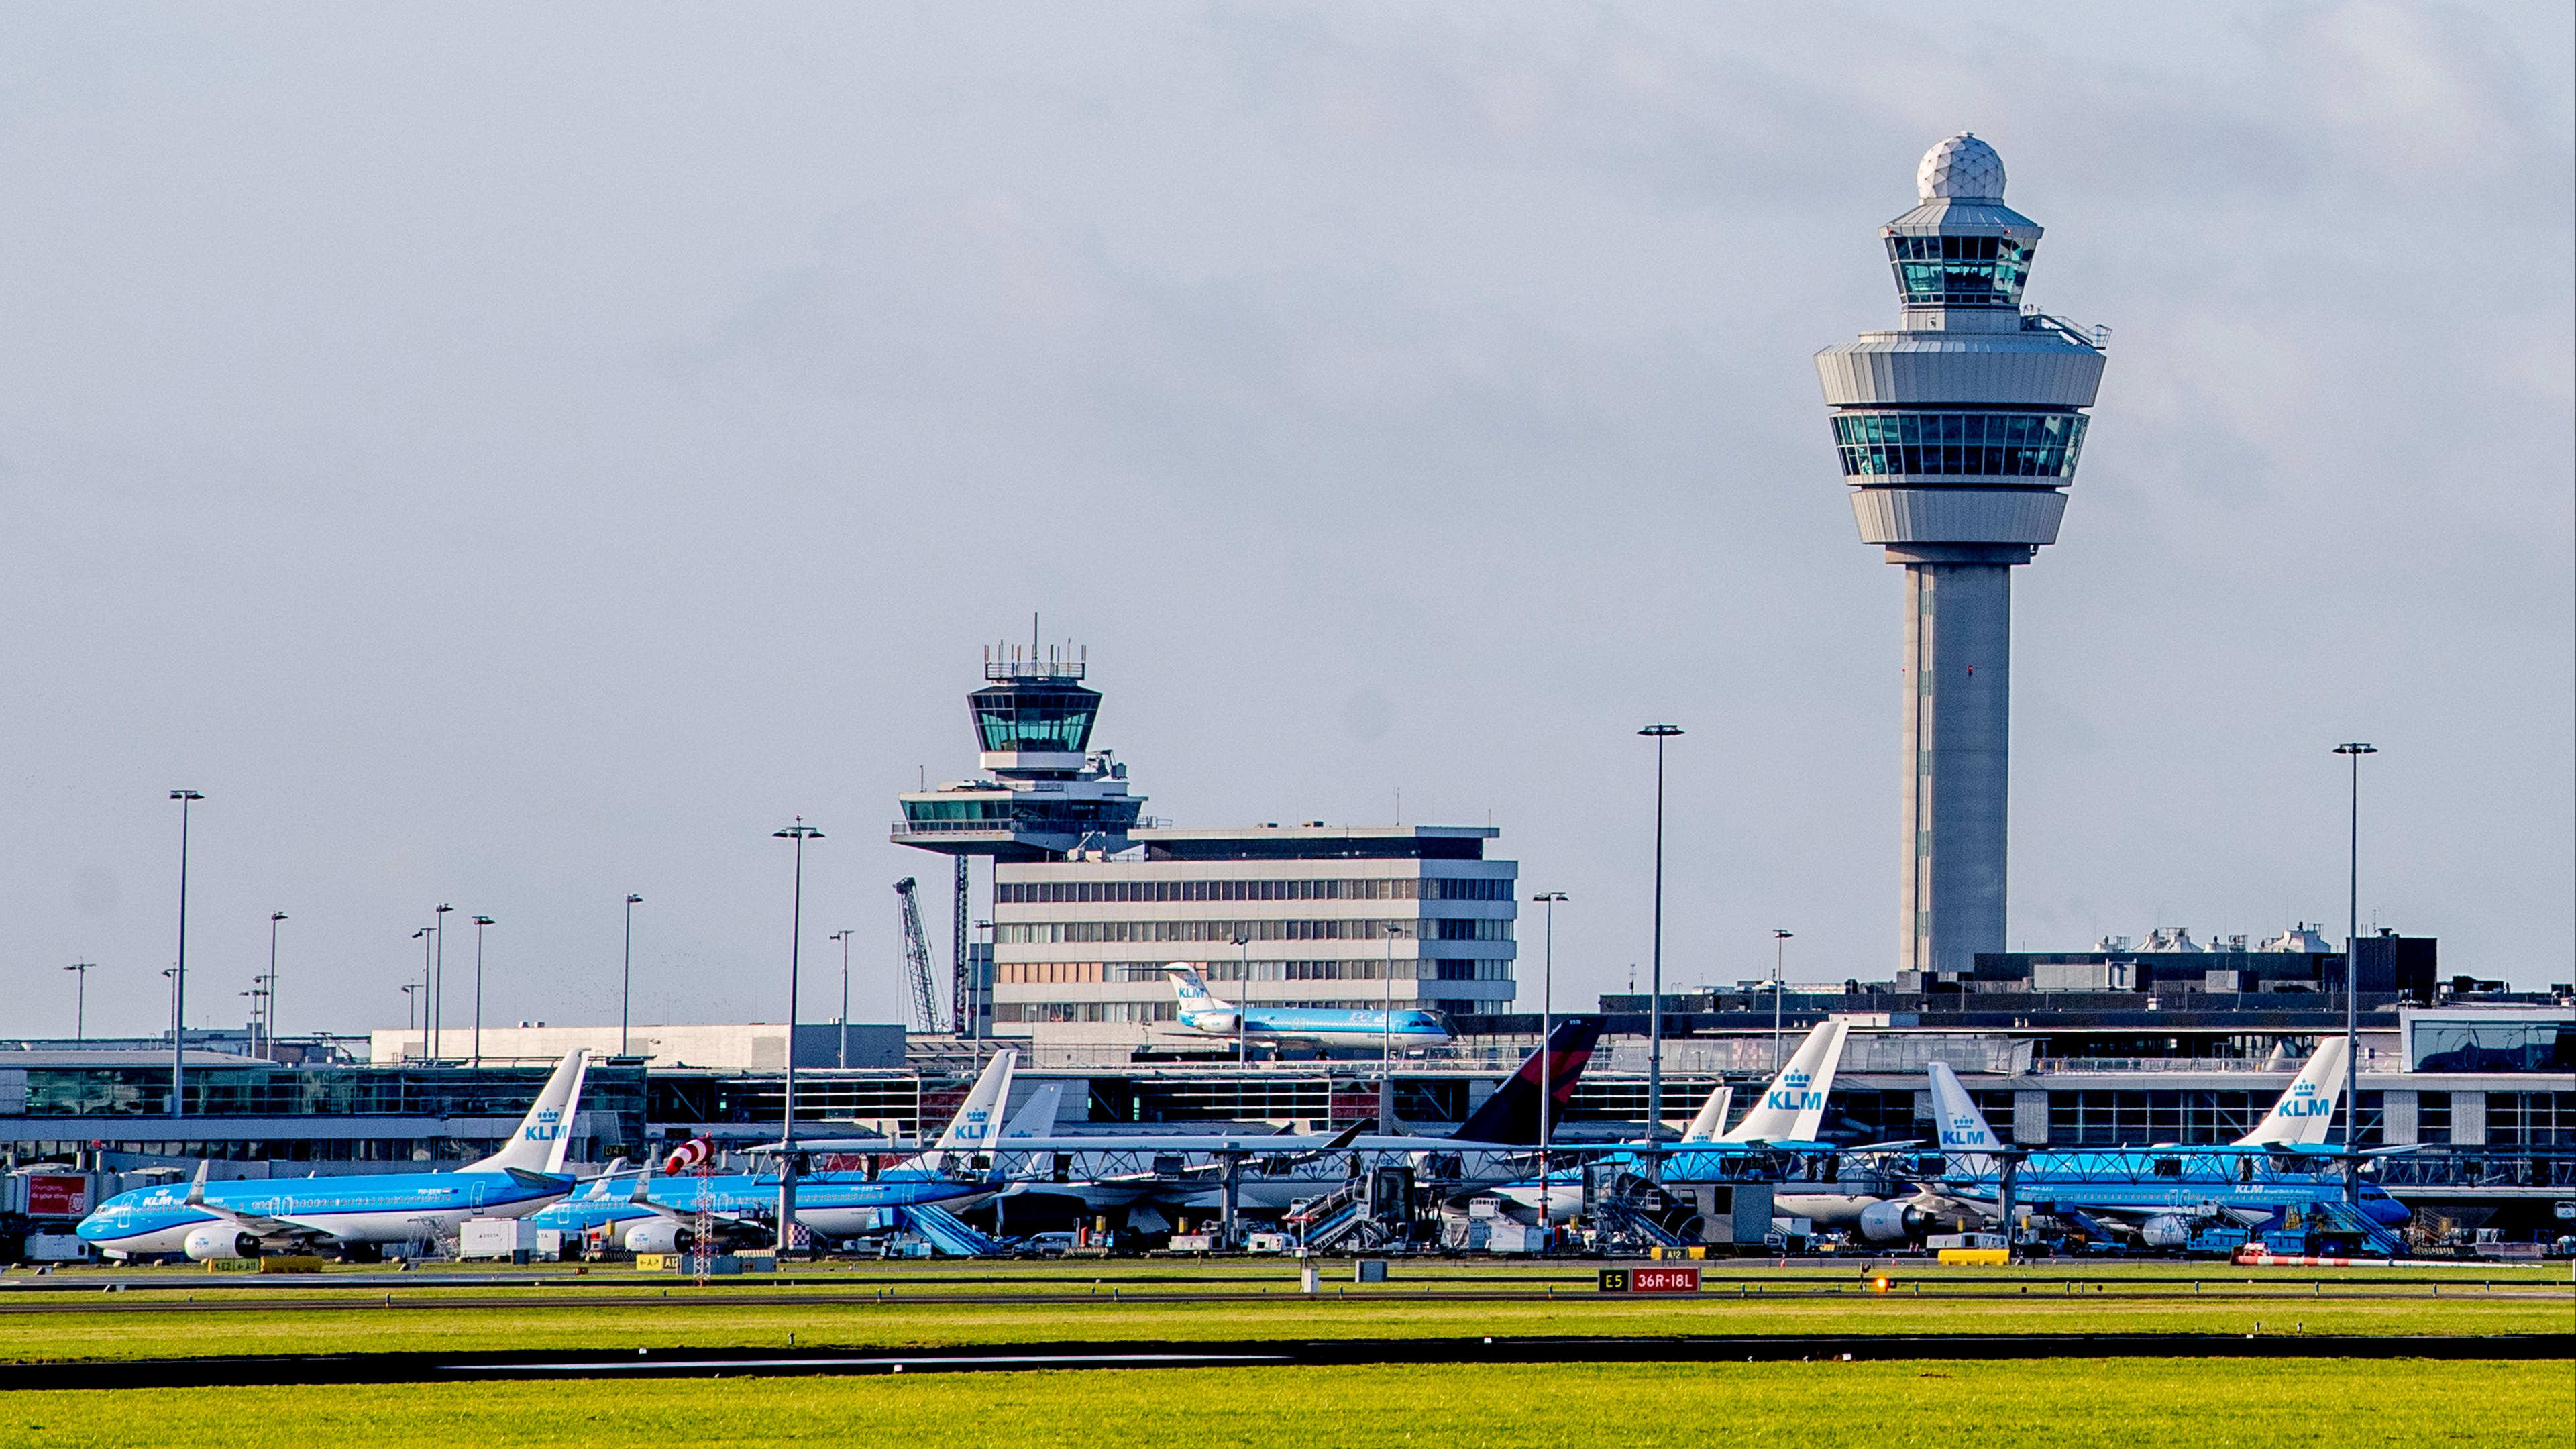 Vliegen vanaf Schiphol te duur, reizigers vertrekken over de grens